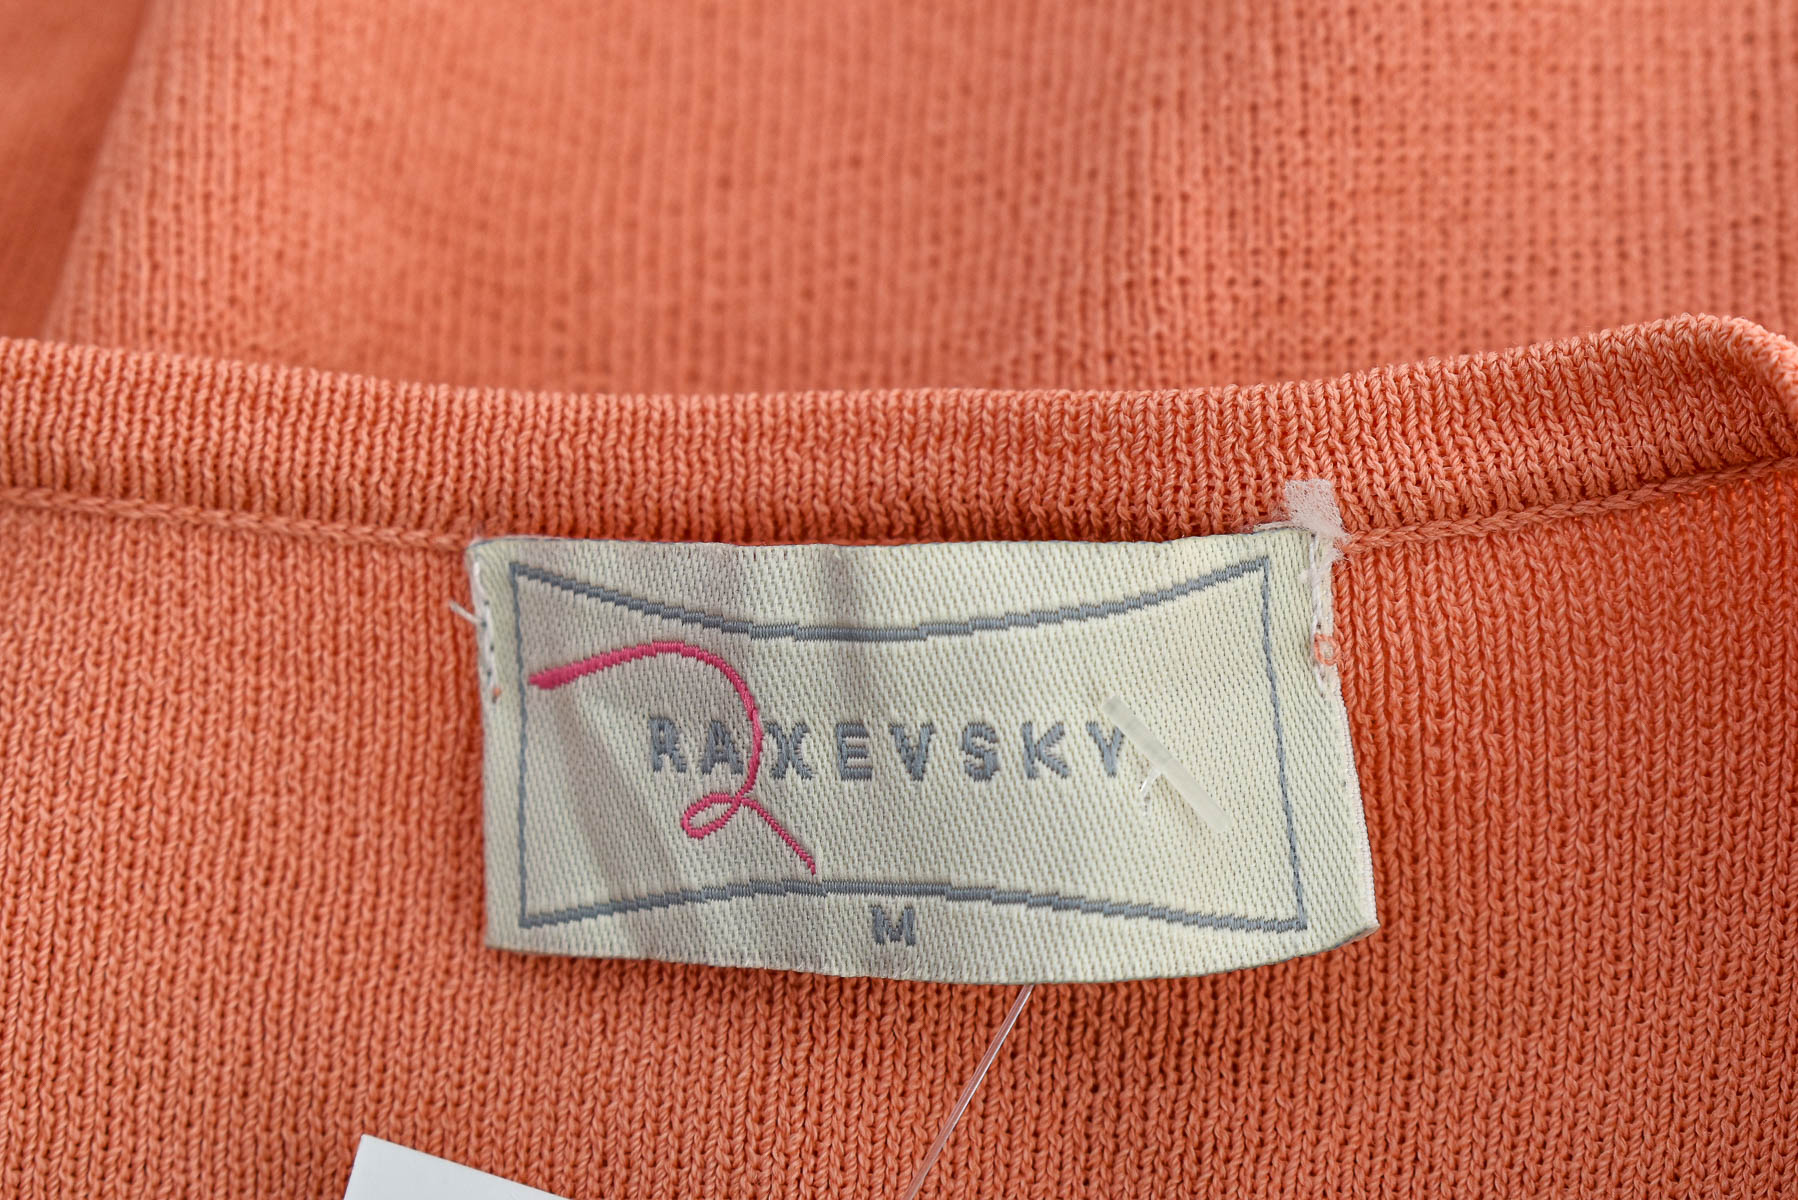 Women's sweater - RAXEVSKY - 2